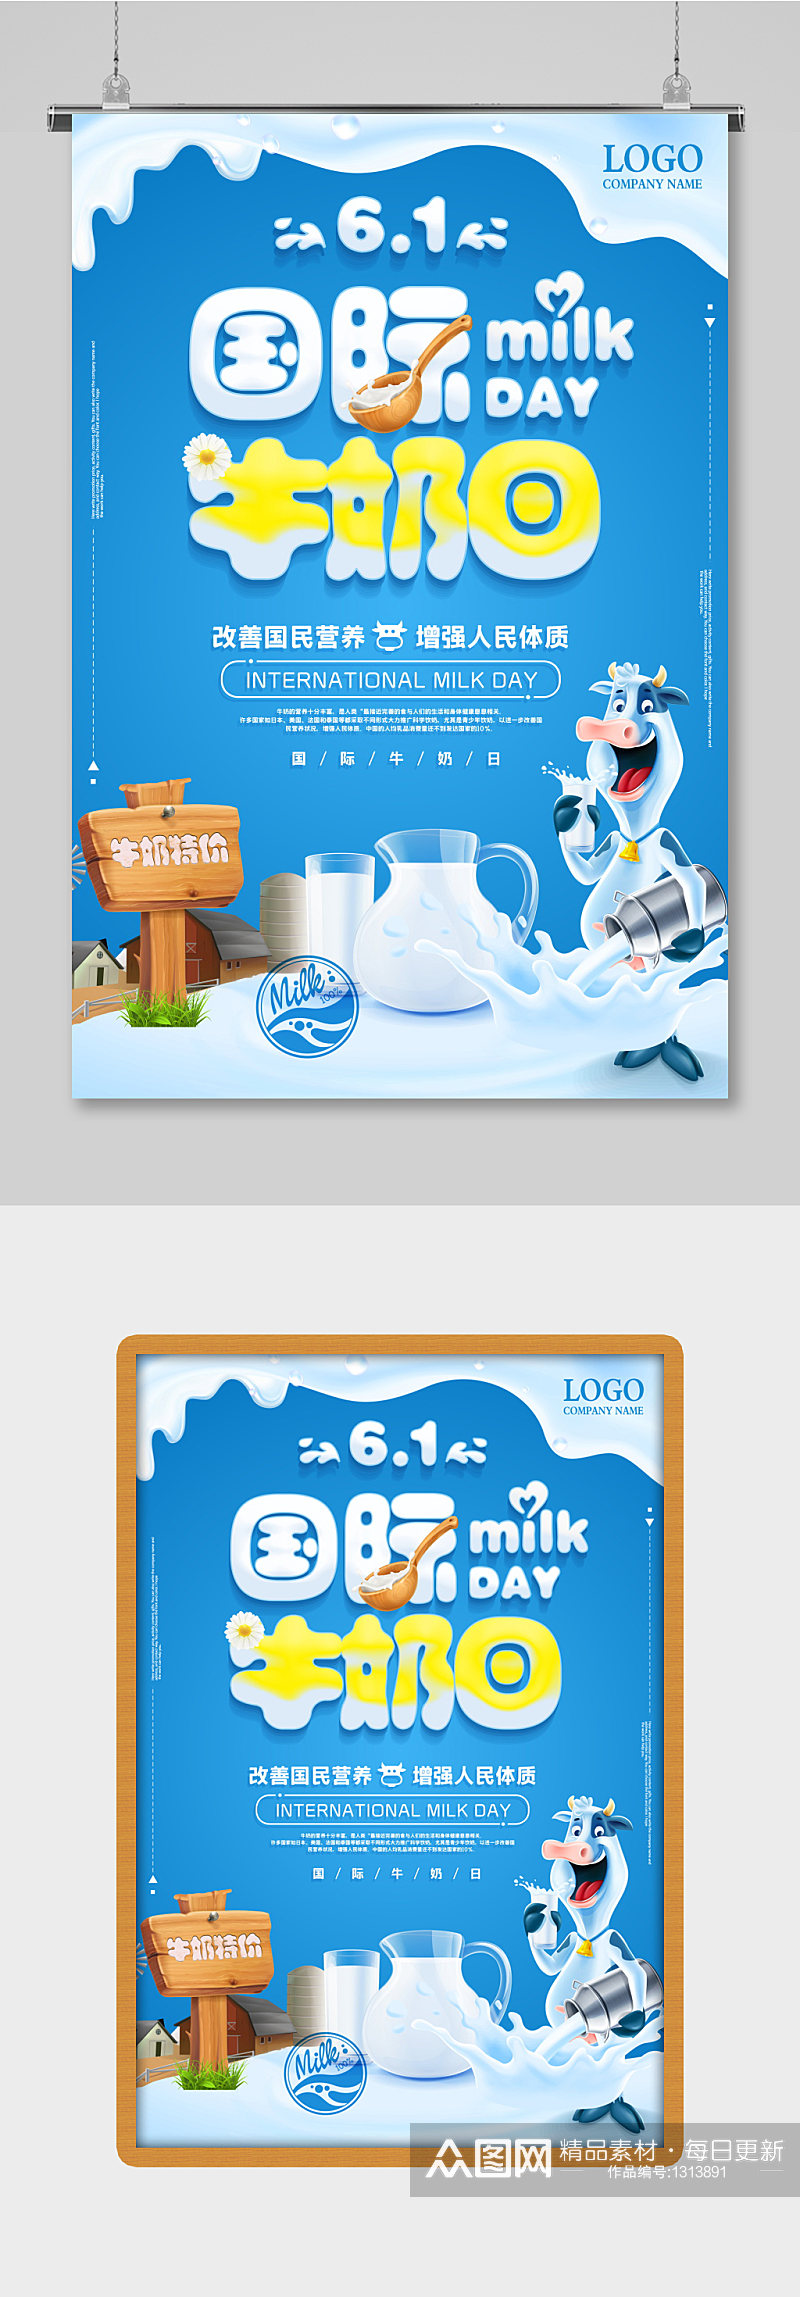 清新世界牛奶日宣传国际世界牛奶日海报素材